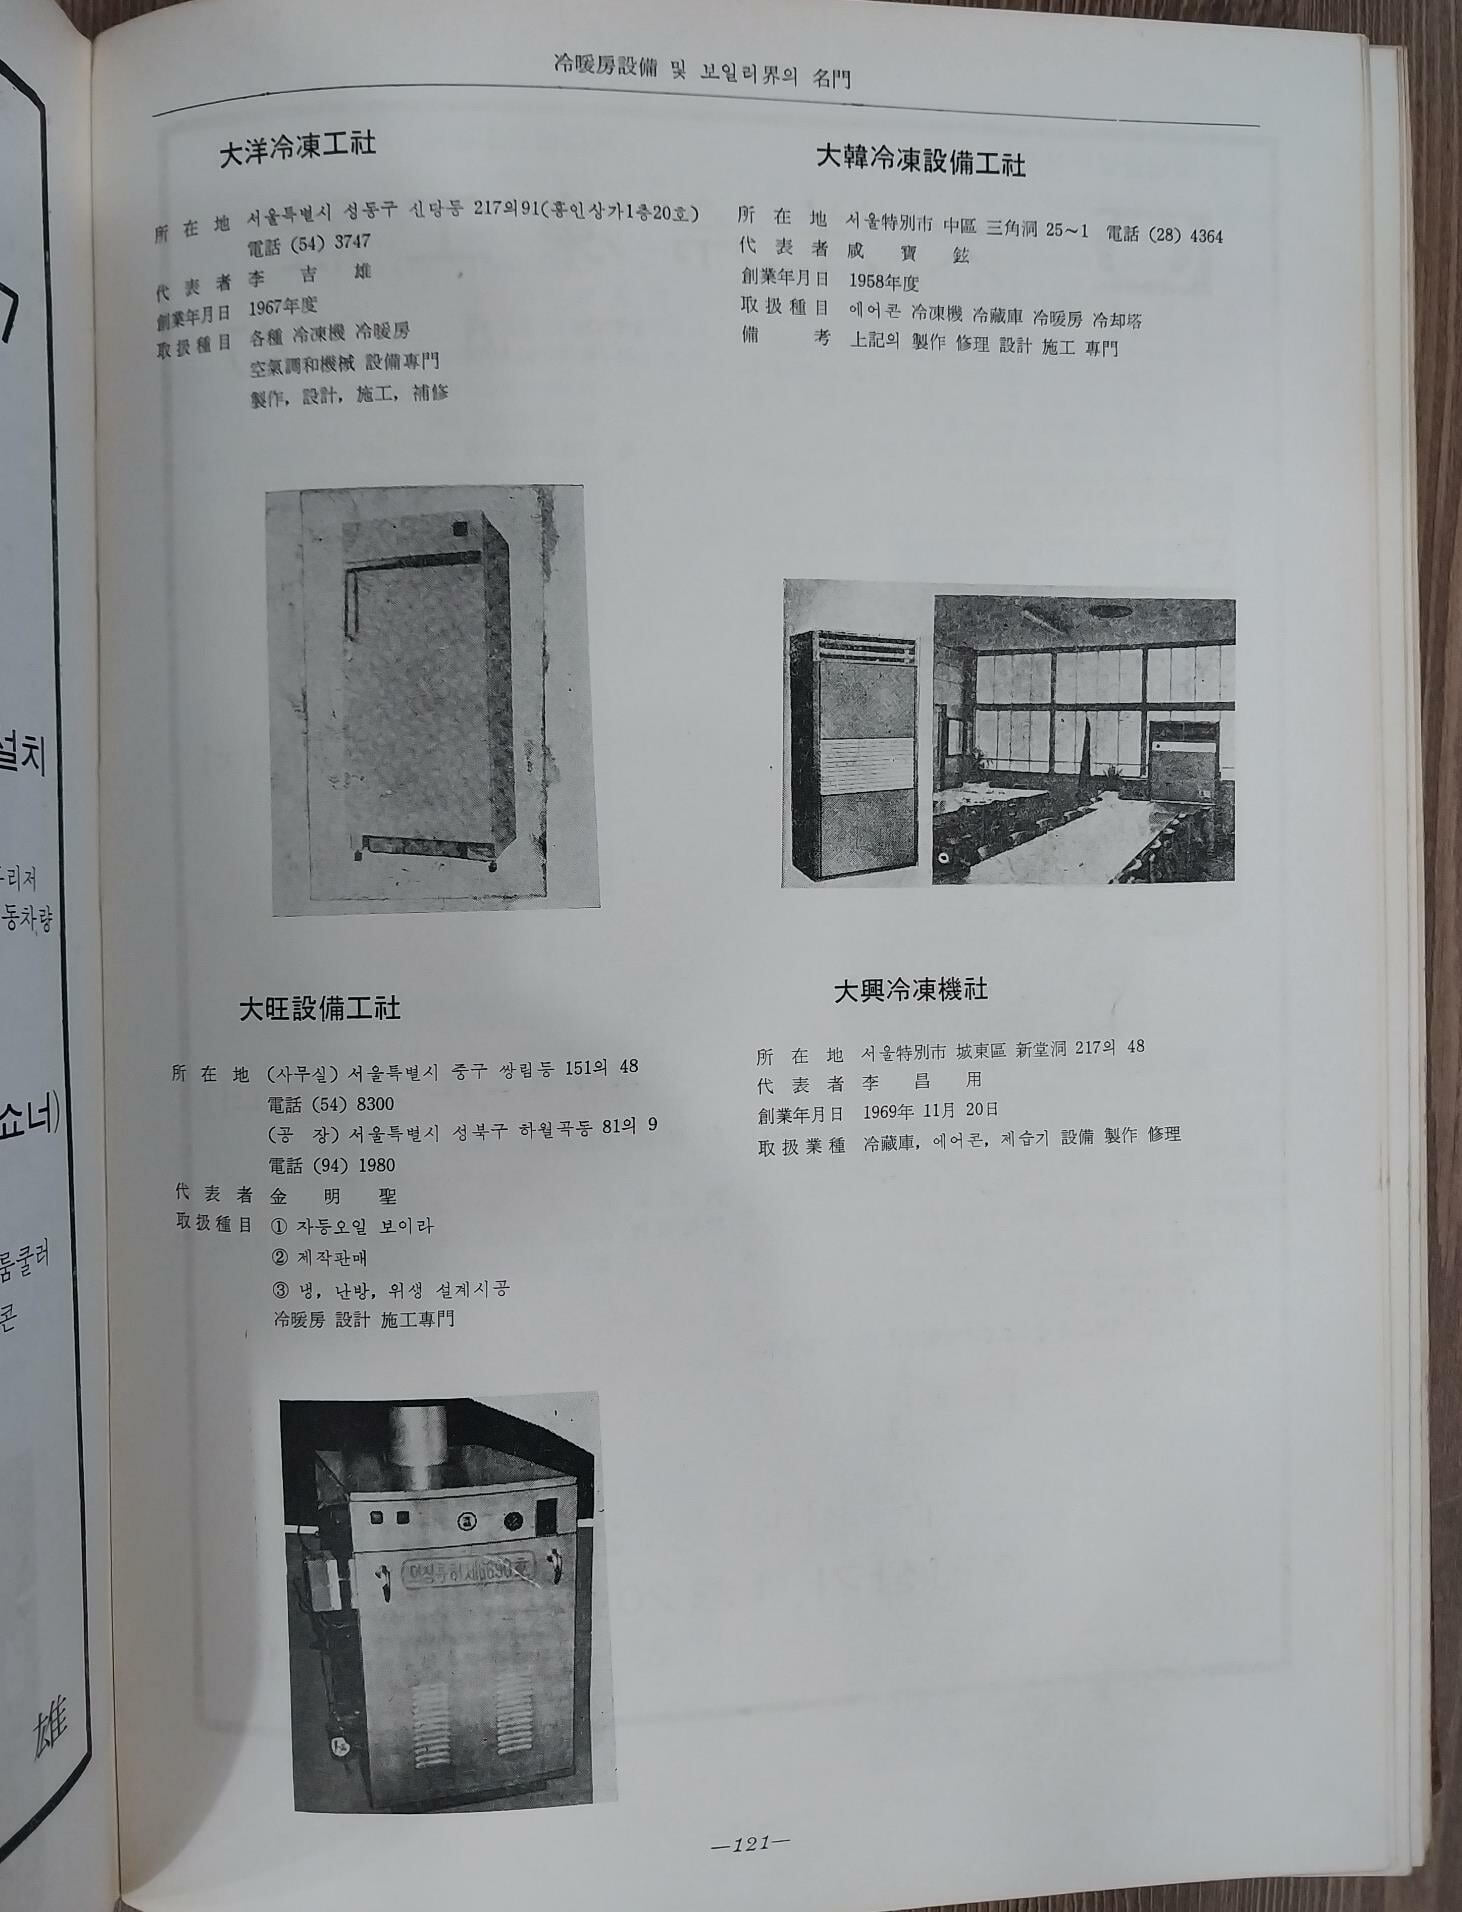 大서울百科大觀 大 [서울] 百科大觀 - 대서울백과대관 | 1970년 6월